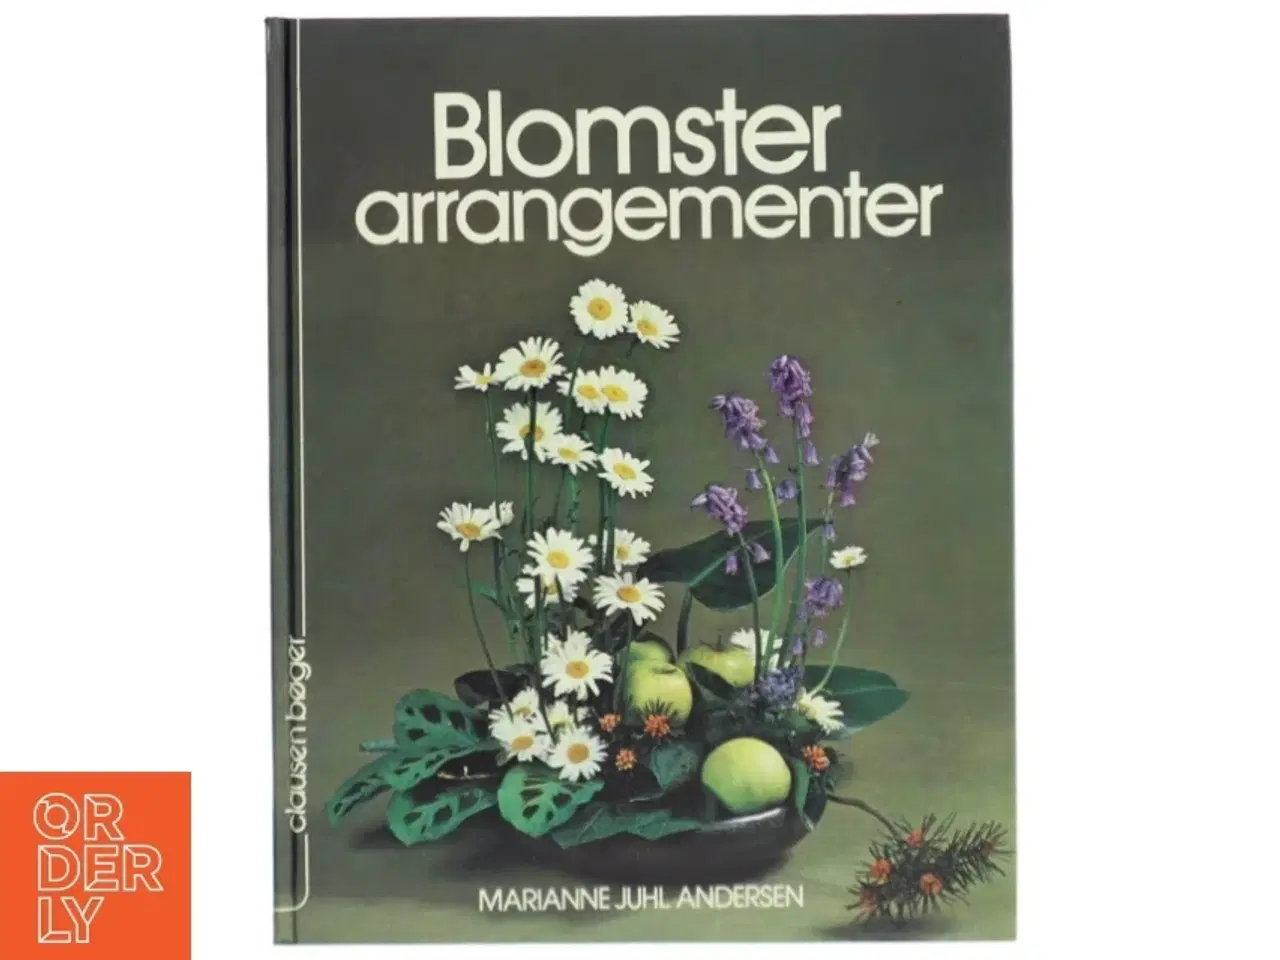 Billede 1 - “Blomsterarrangementer” af Marianne Juhl Andersen, Clausen Bøger.